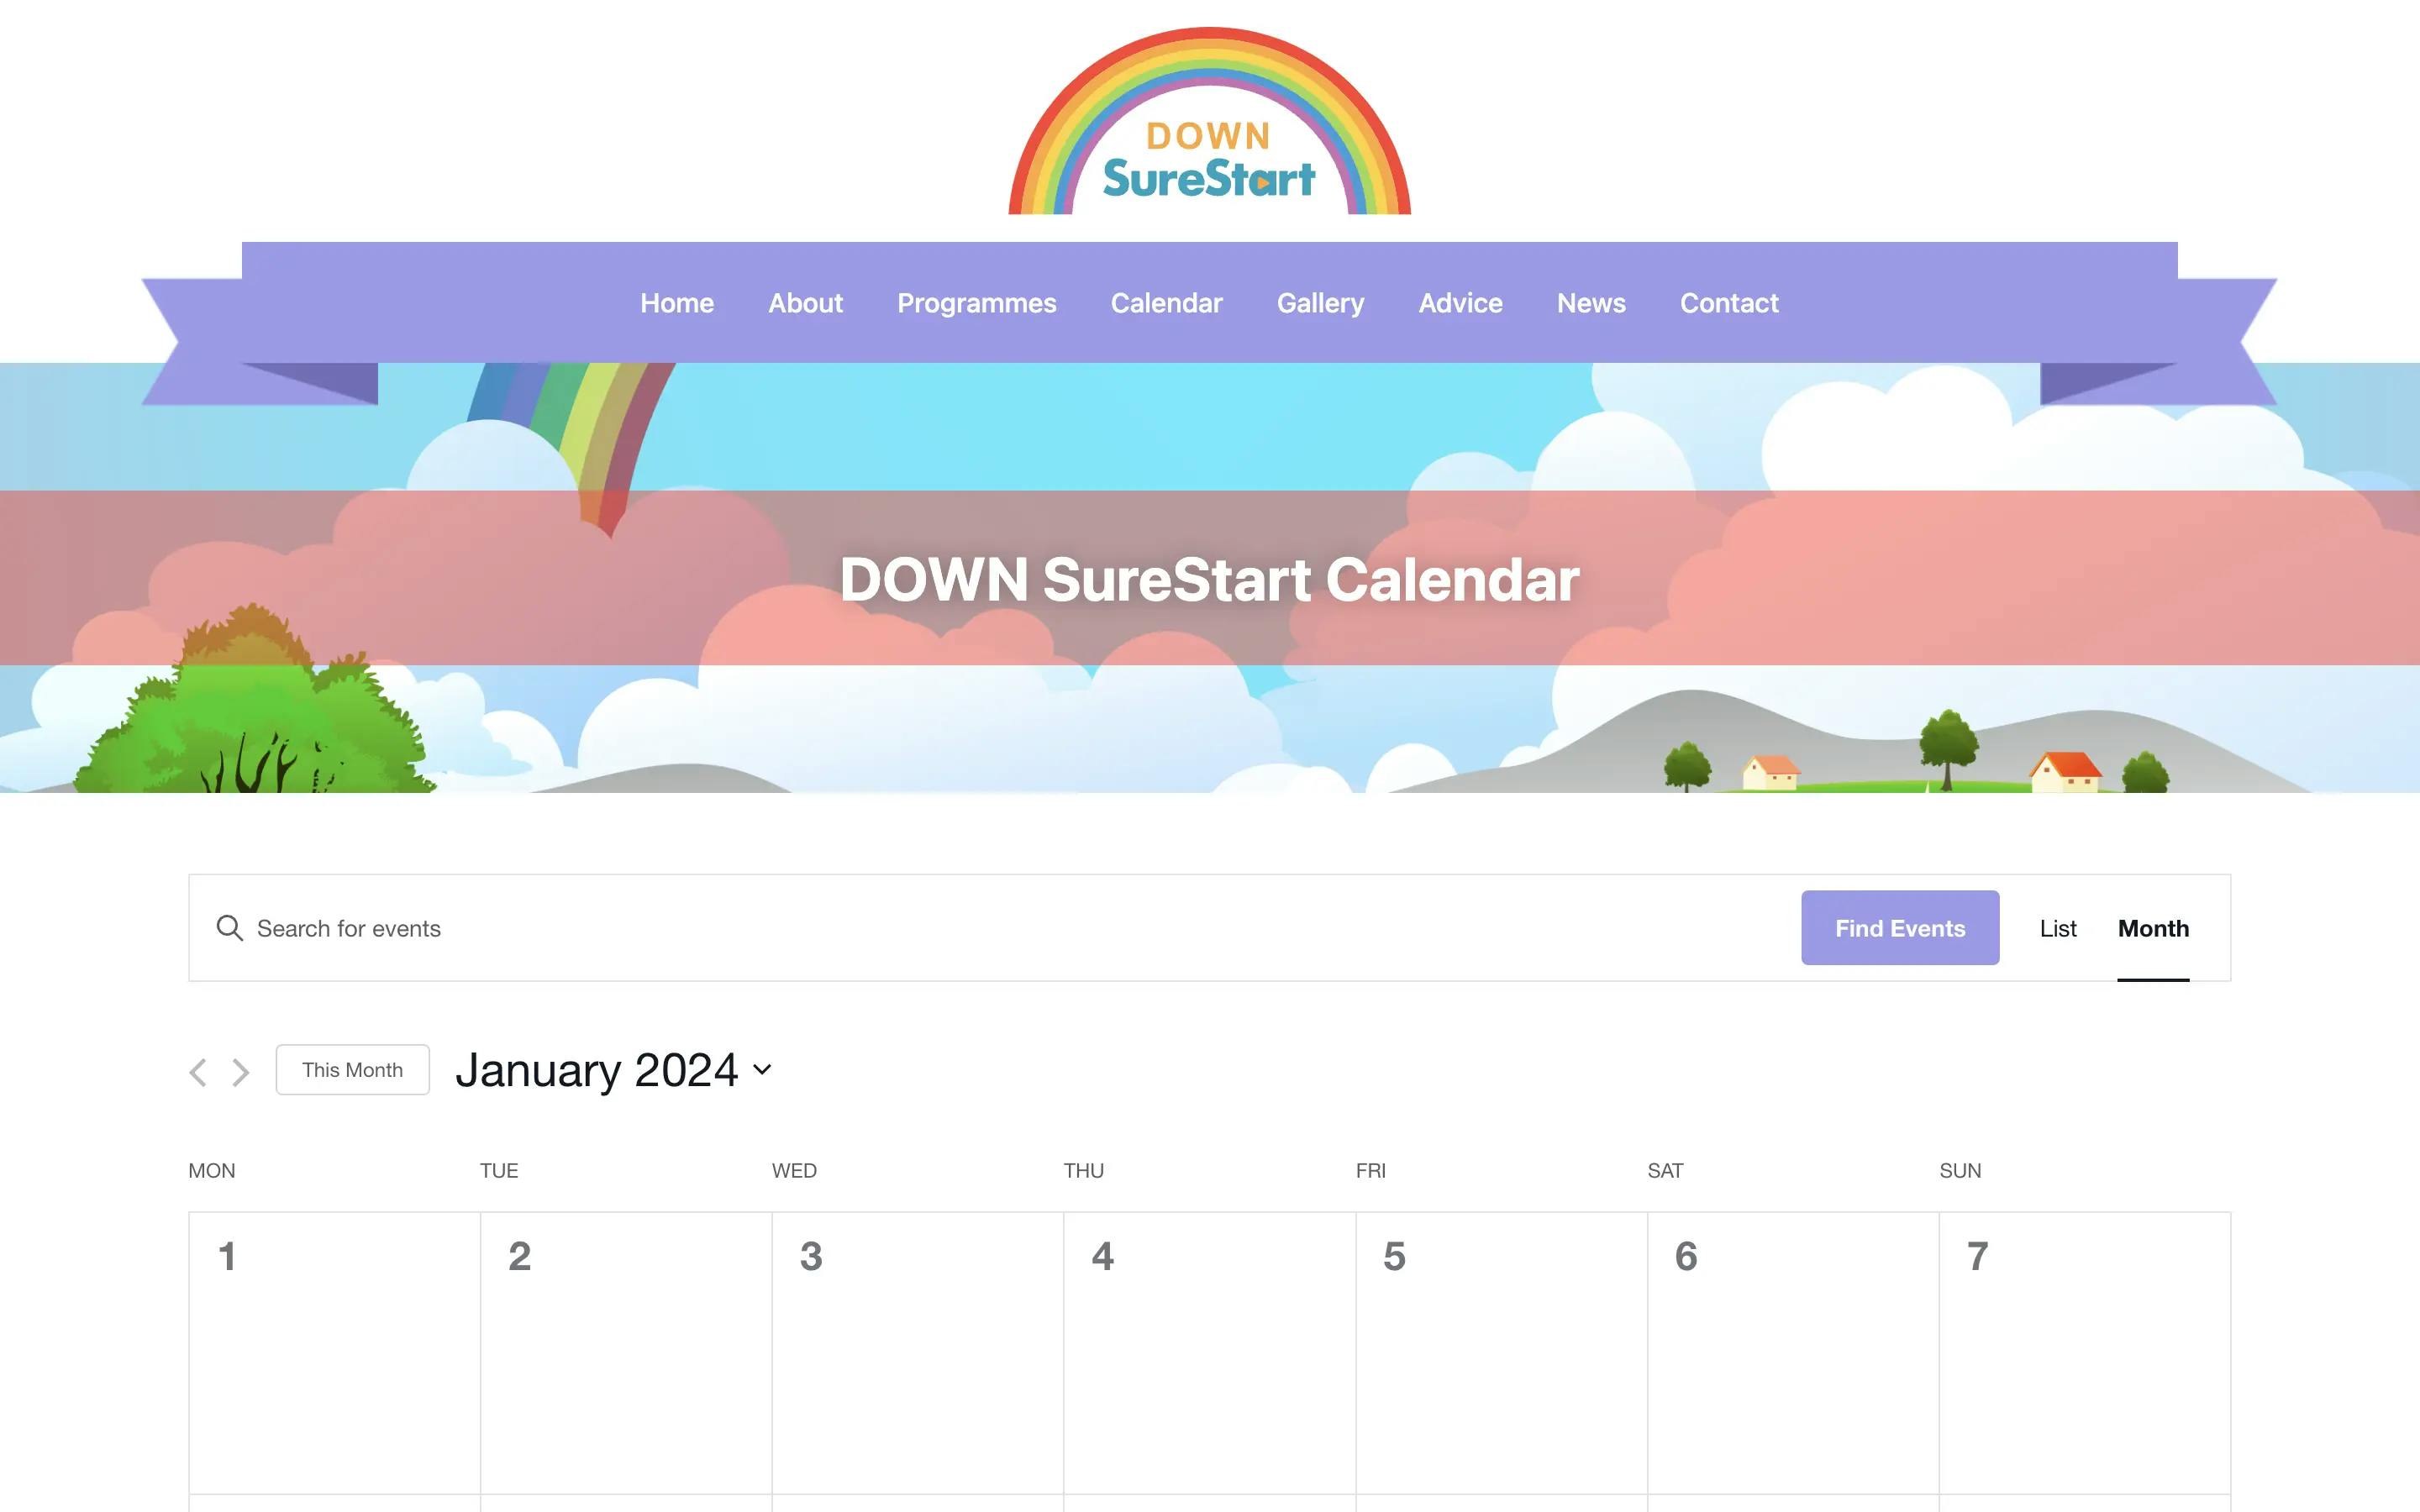 DOWN SureStart calendar page web design on desktop